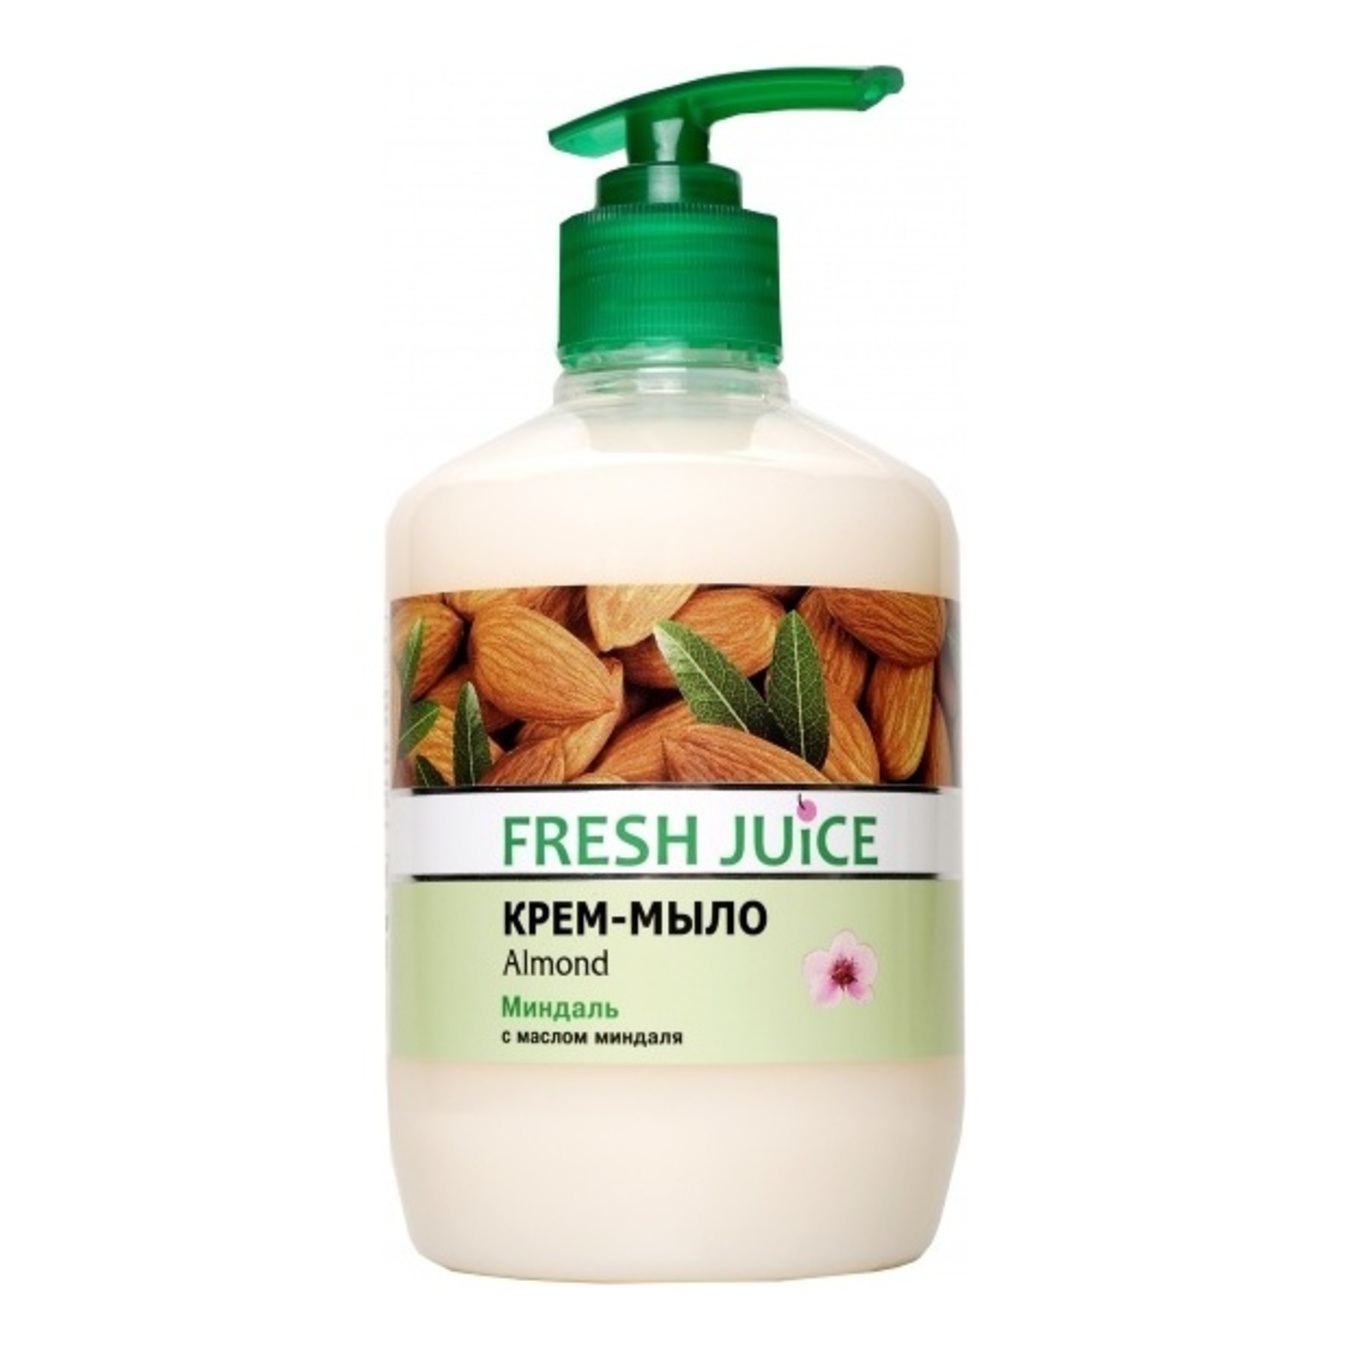  Fresh Juice Cream soap liquid Almond 460ml